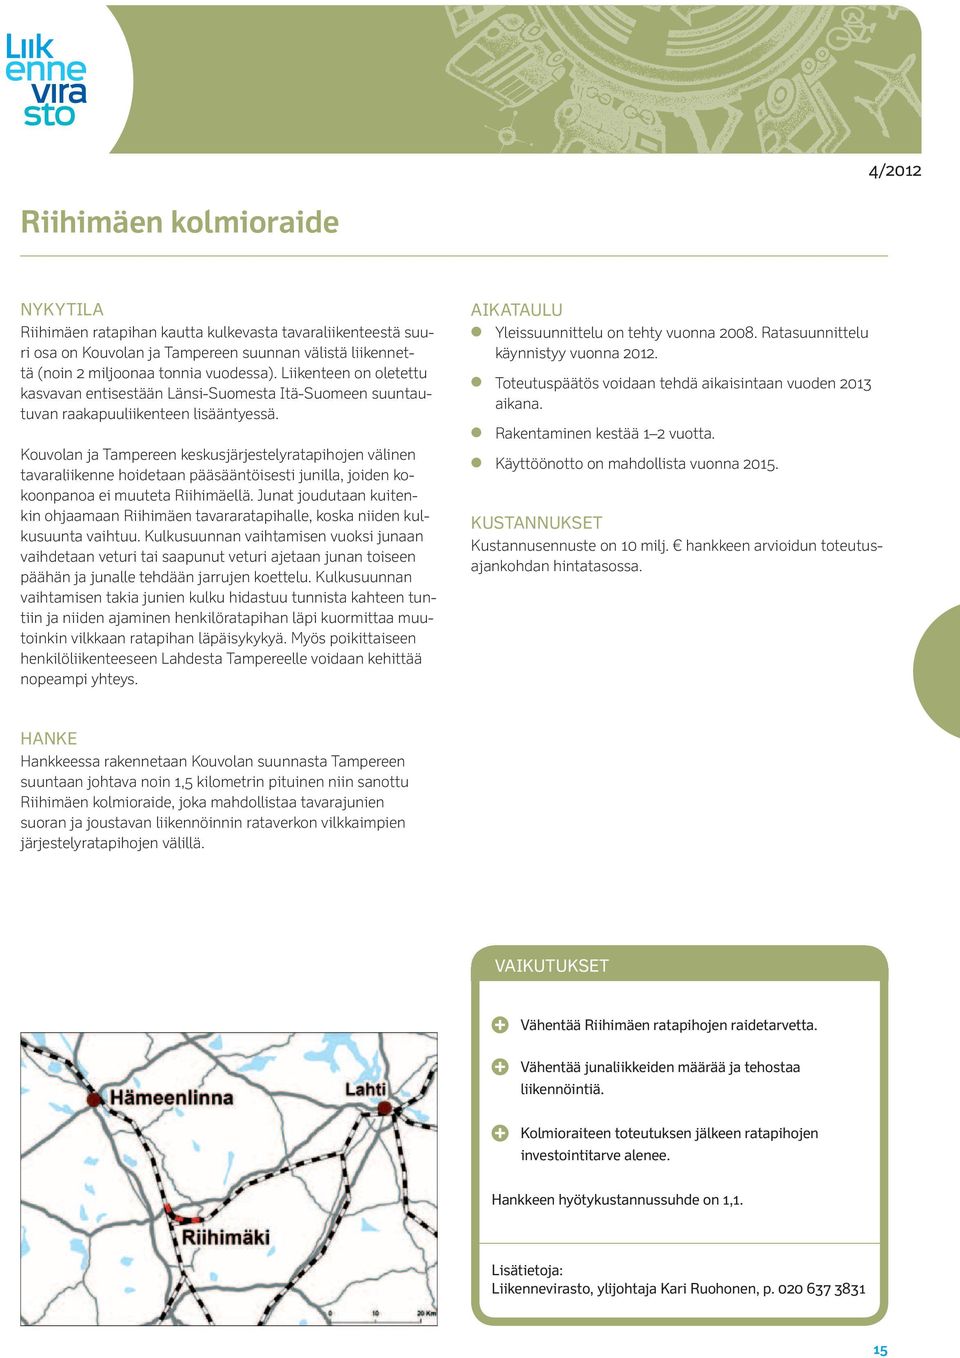 Kouvolan ja Tampereen keskusjärjestelyratapihojen välinen tavaraliikenne hoidetaan pääsääntöisesti junilla, joiden kokoonpanoa ei muuteta Riihimäellä.